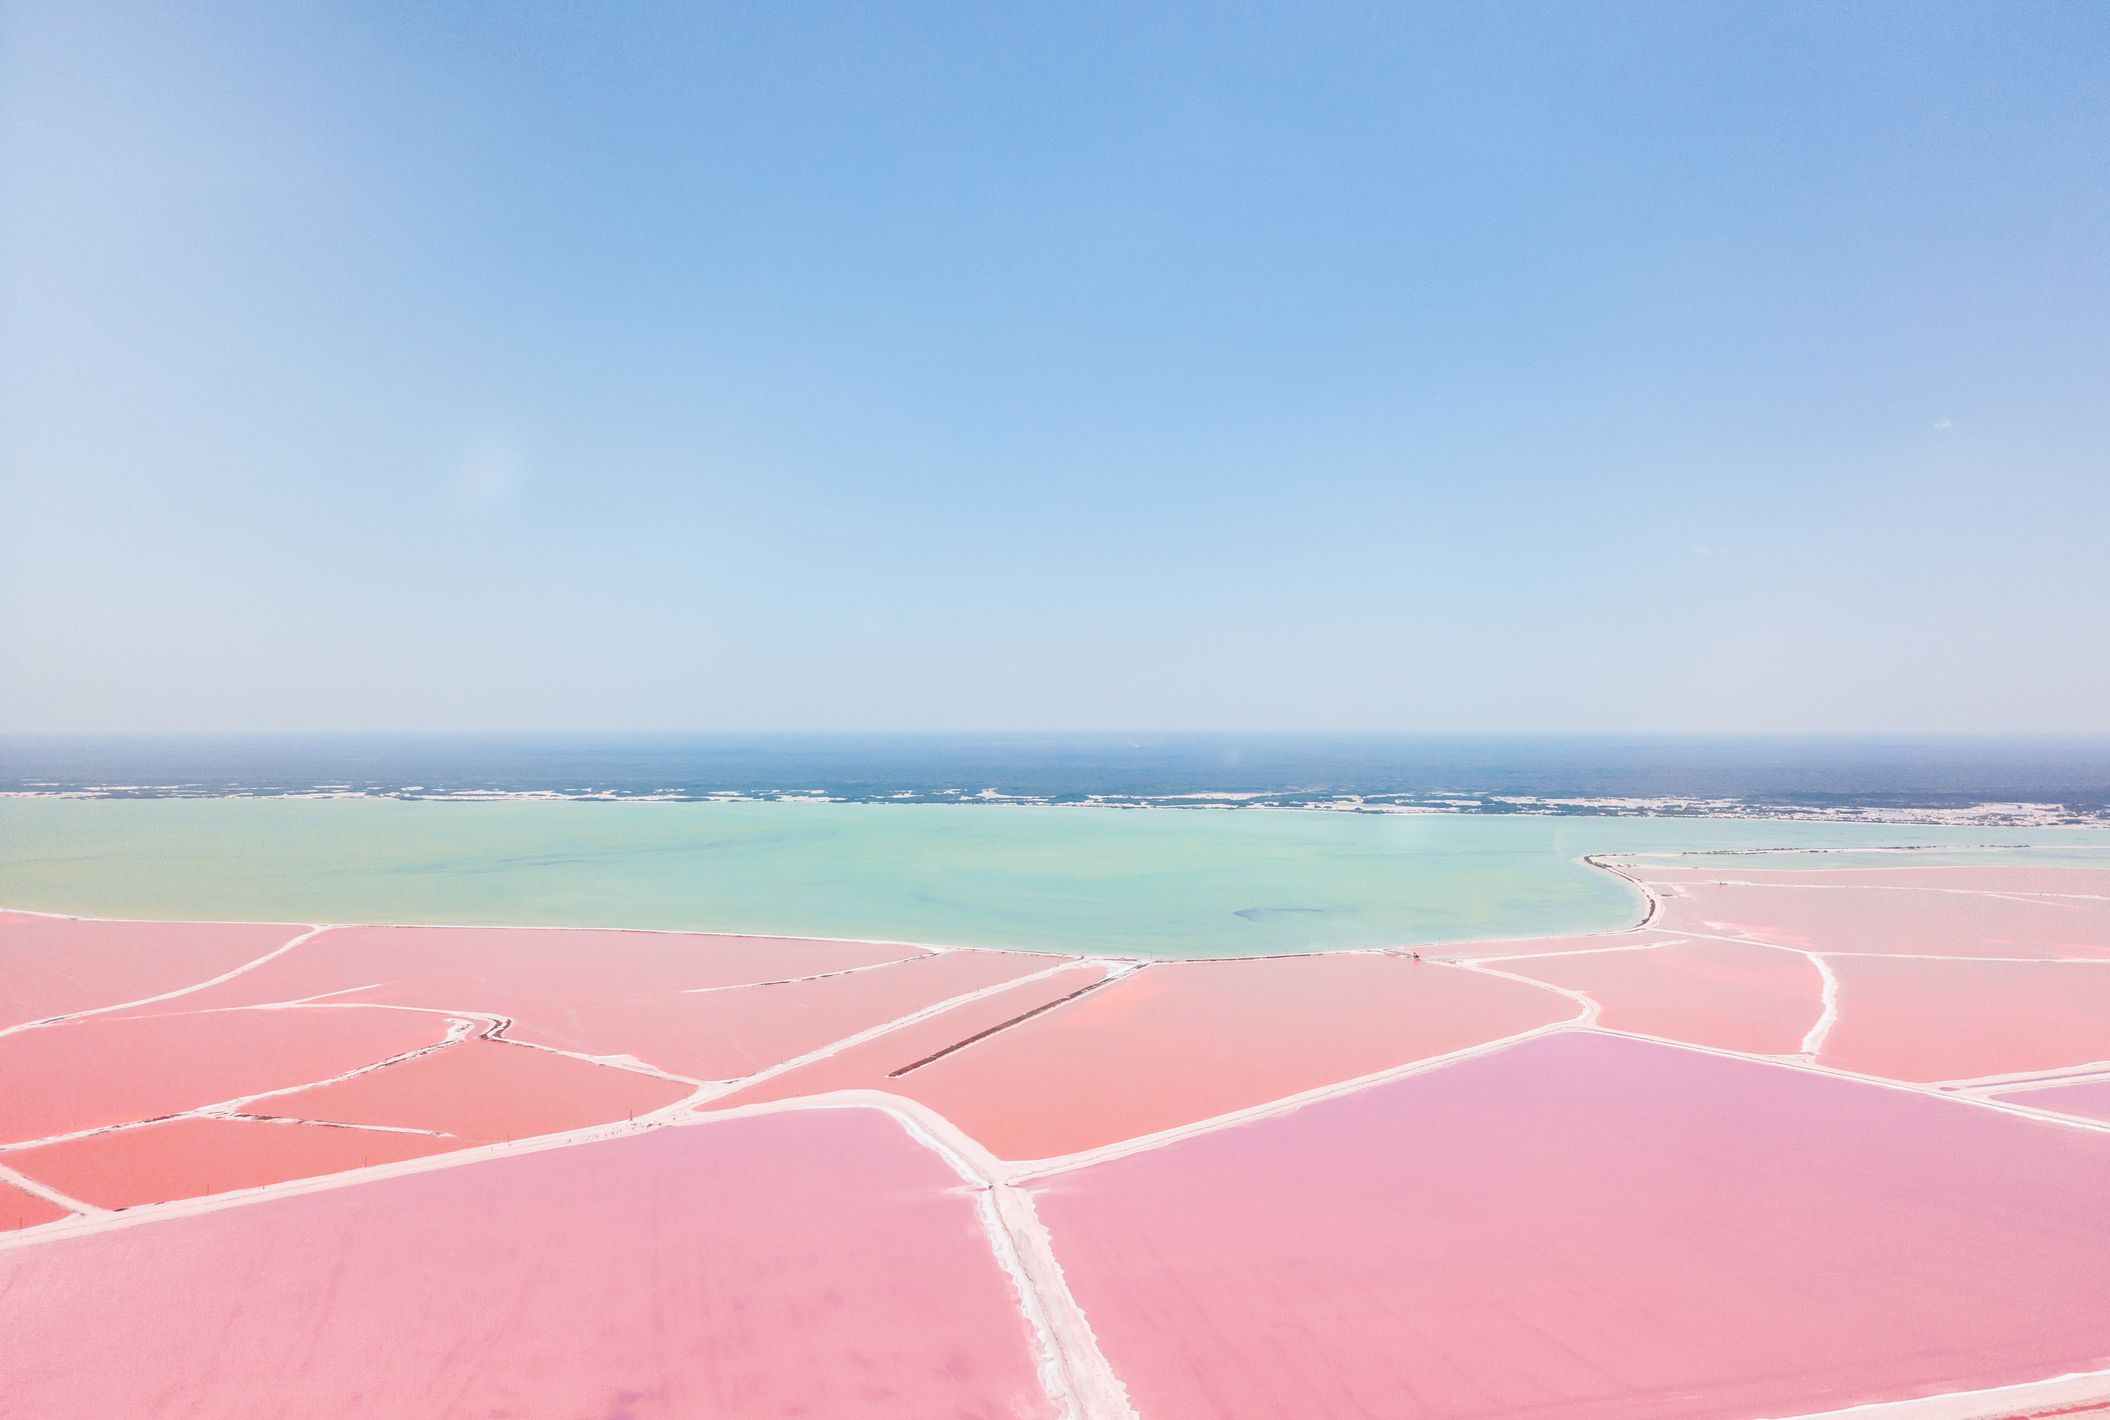 https://hips.hearstapps.com/hmg-prod/images/mexiko-yucatan-las-coloradas-pink-lake-salt-lake-royalty-free-image-1570209145.jpg